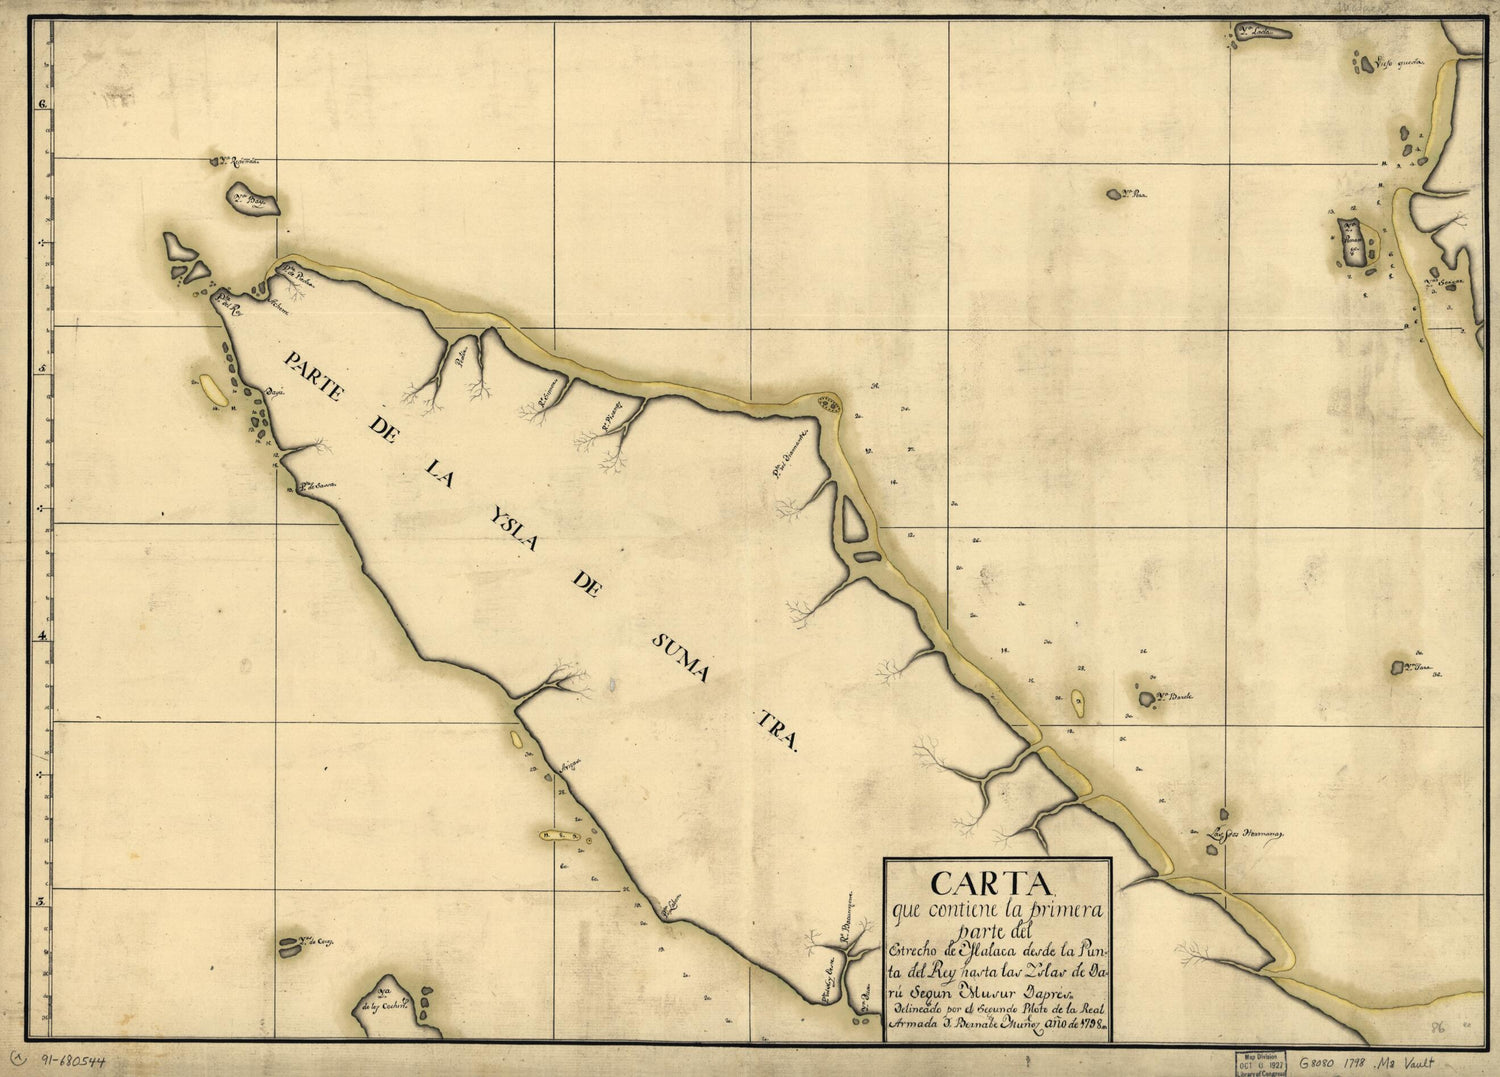 This old map of Carta Que Contiene La Primera Parte Del Estrecho De Malaca Desde La Punta Del Rey Hasta Las Yslas De Daru Segun Musur Dapres from 1798 was created by Bernabe Muñoz in 1798